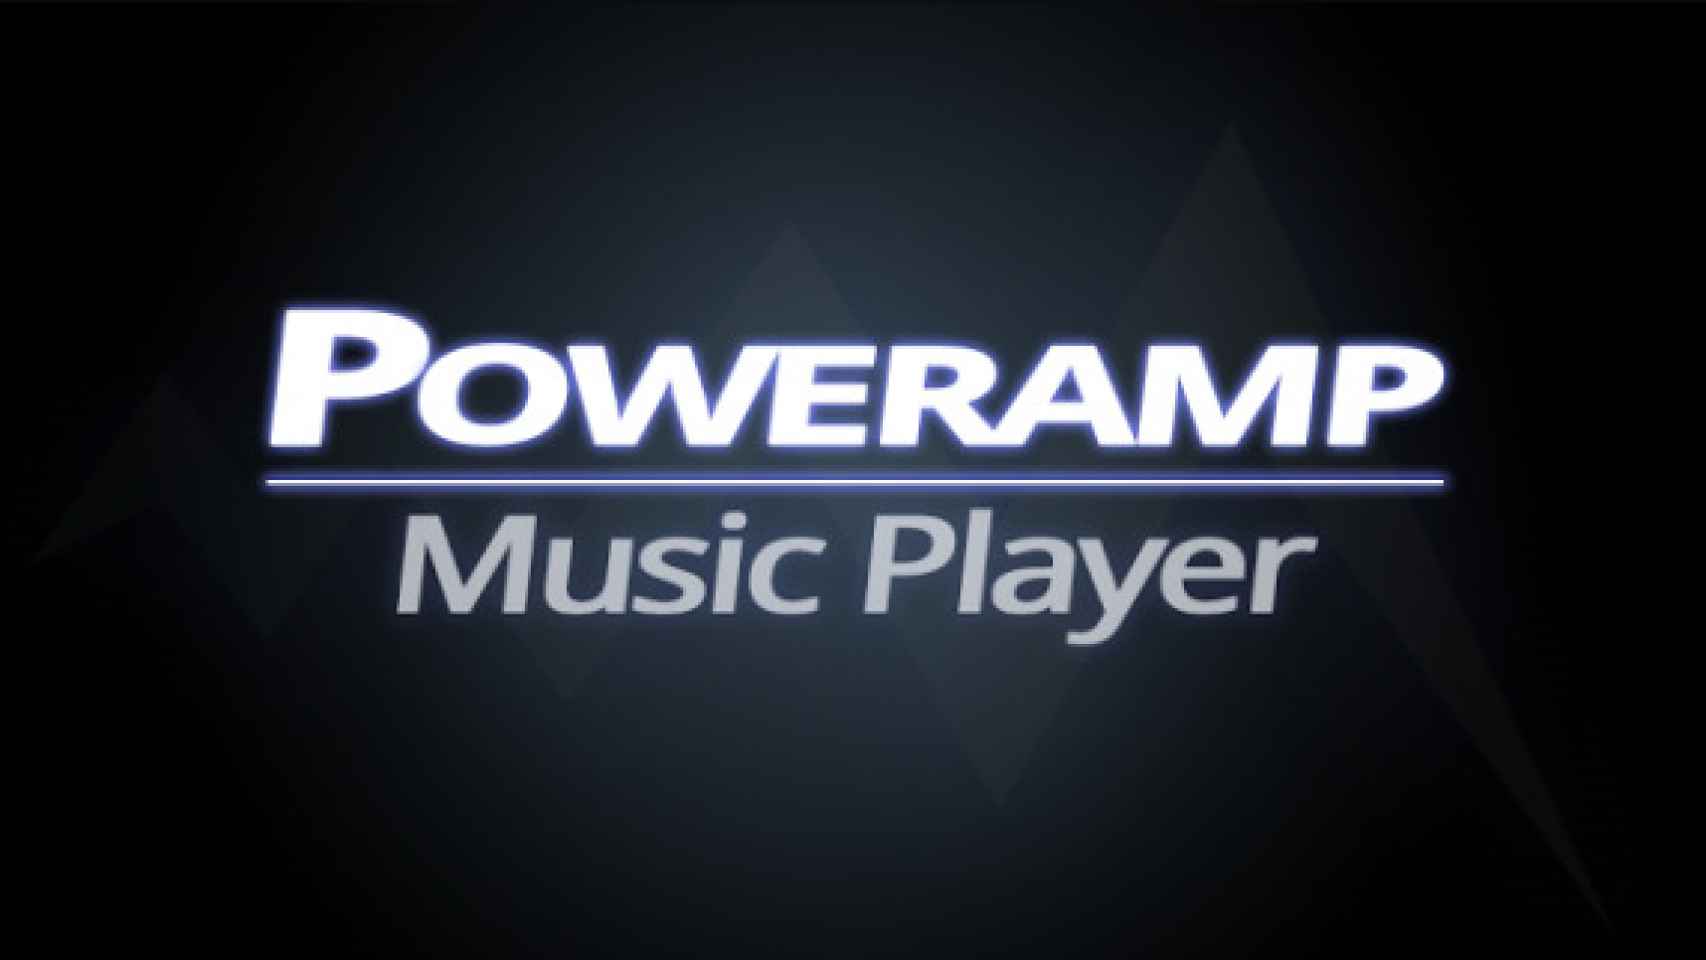 El reproductor de música PowerAMP se actualiza mejorando sus widgets